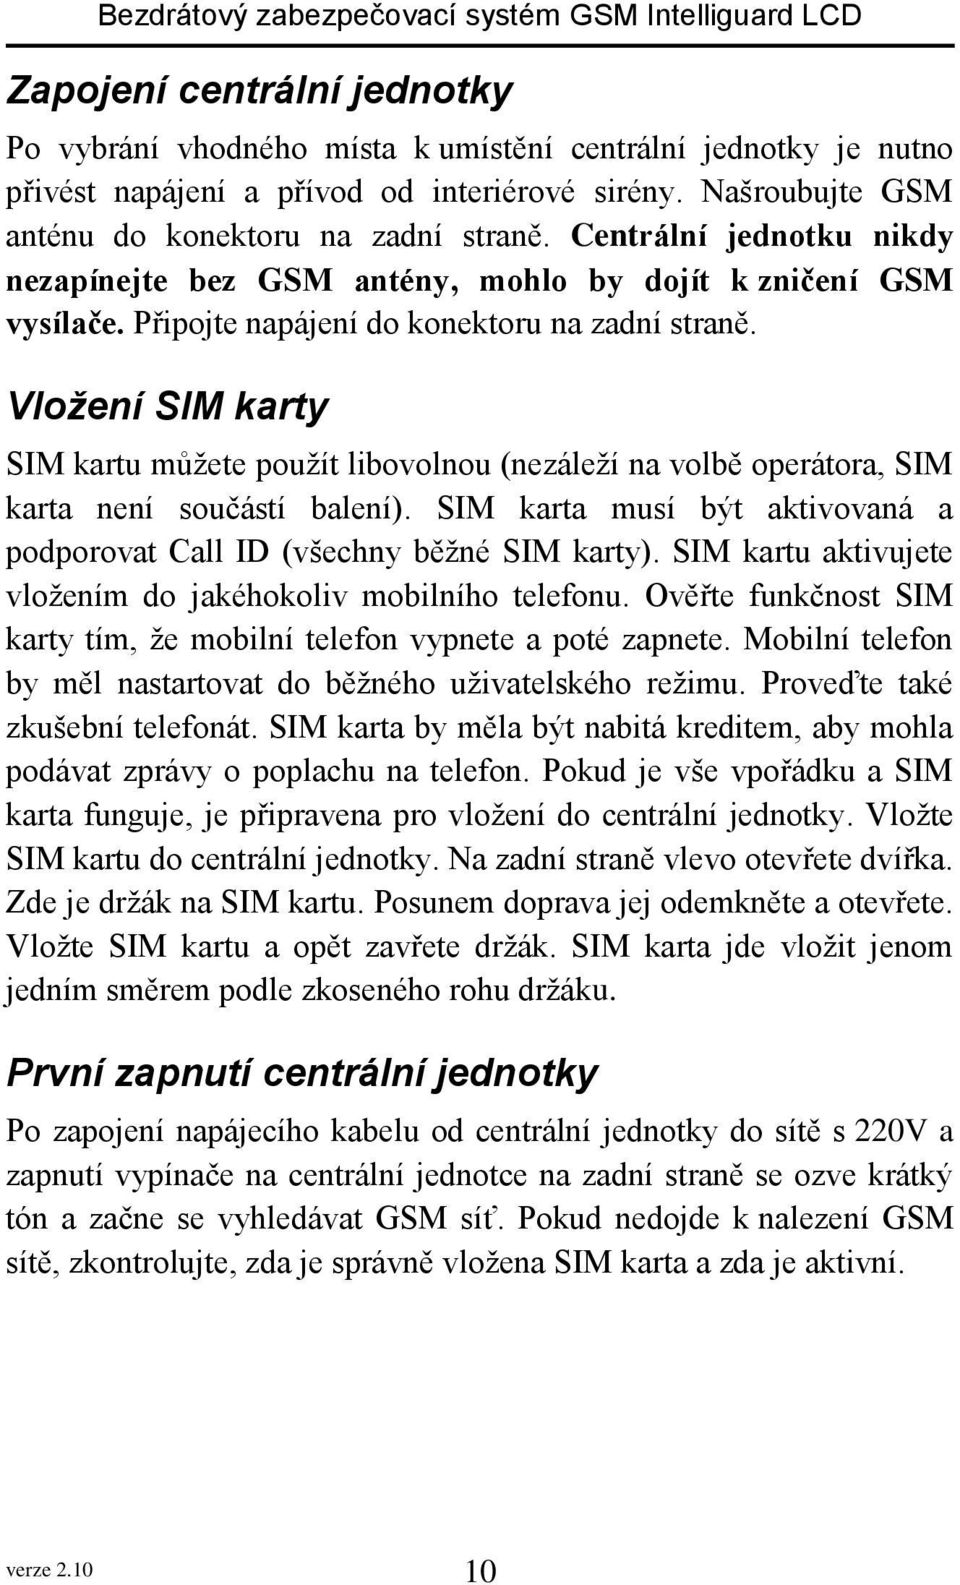 Vložení SIM karty SIM kartu můžete použít libovolnou (nezáleží na volbě operátora, SIM karta není součástí balení). SIM karta musí být aktivovaná a podporovat Call ID (všechny běžné SIM karty).